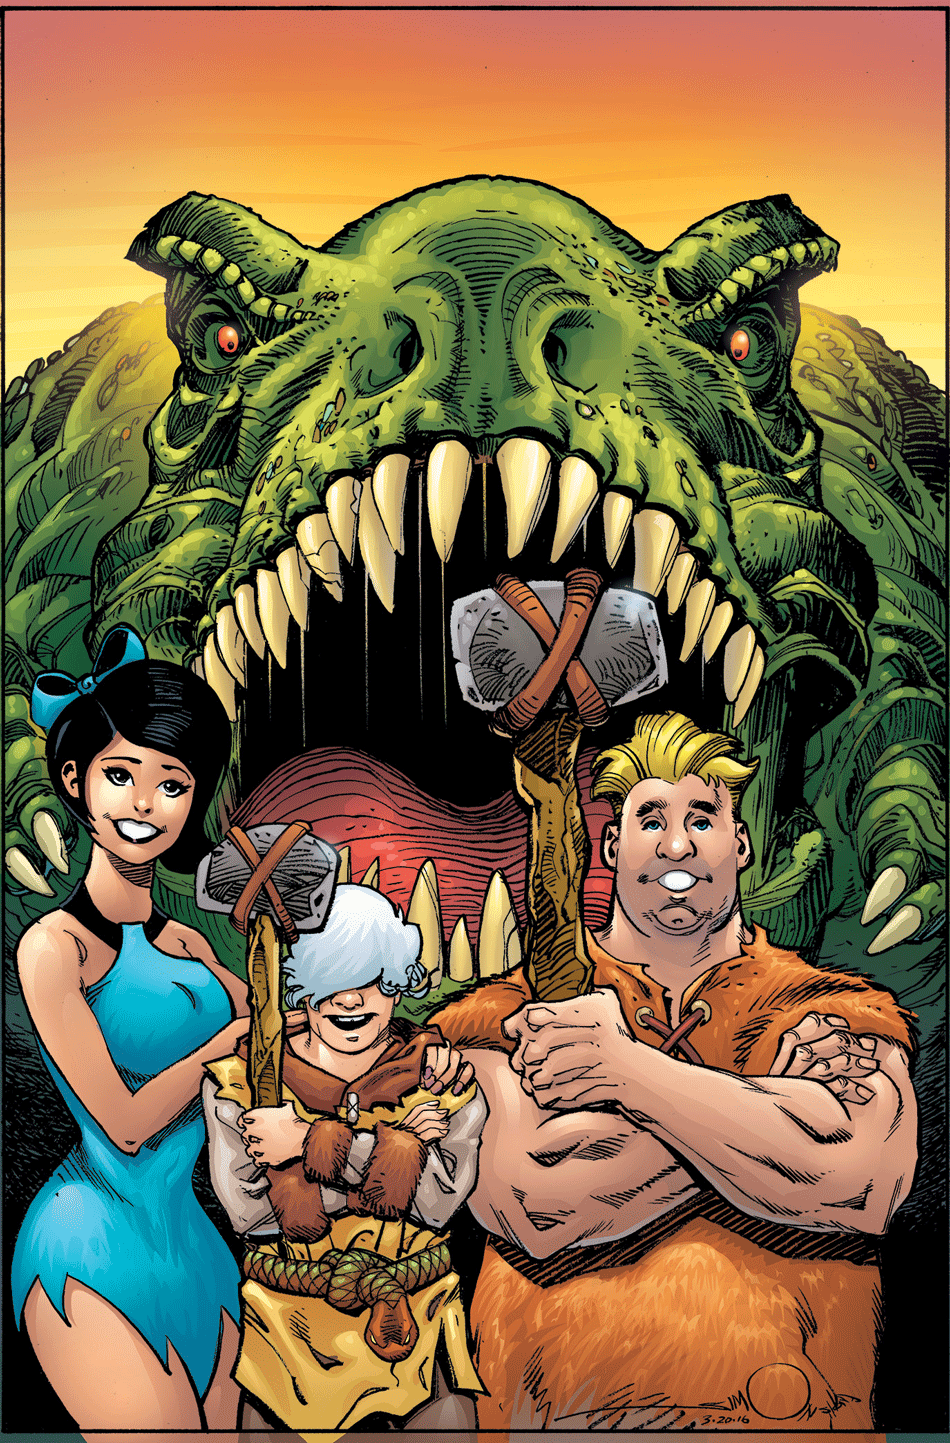 Variant Cover by Walt Simonson